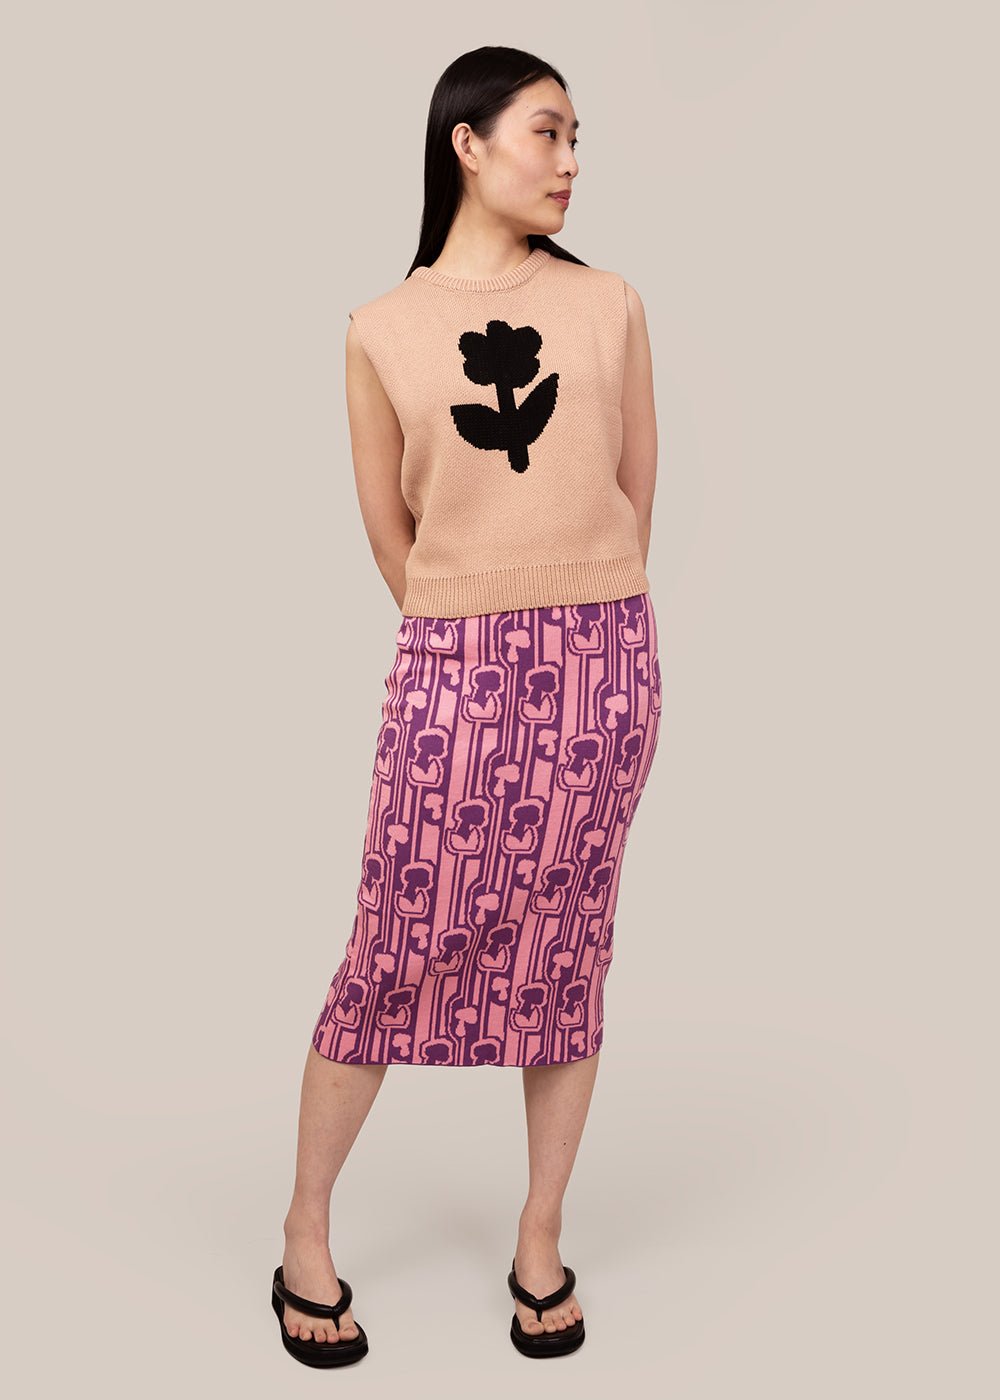 Mundaka Pink Champi Skirt - New Classics Studios Sustainable Ethical Fashion Canada